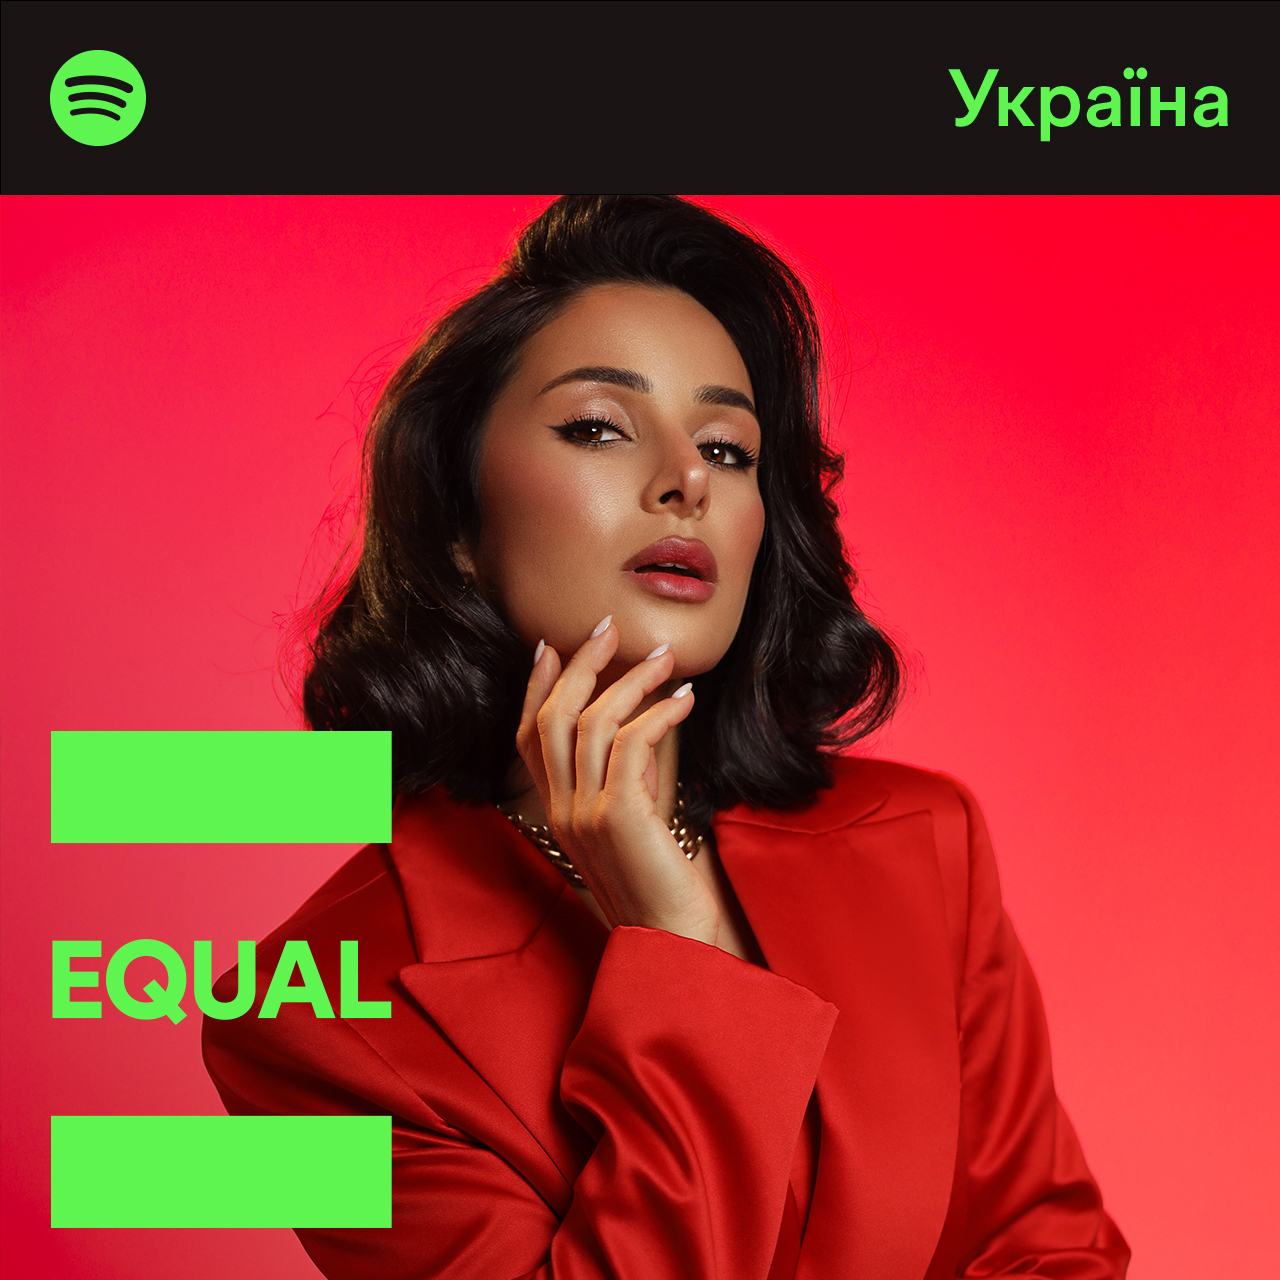 Разом із Spotify Злата Огнєвіч виступає за рівні можливості для жінок у світі музики